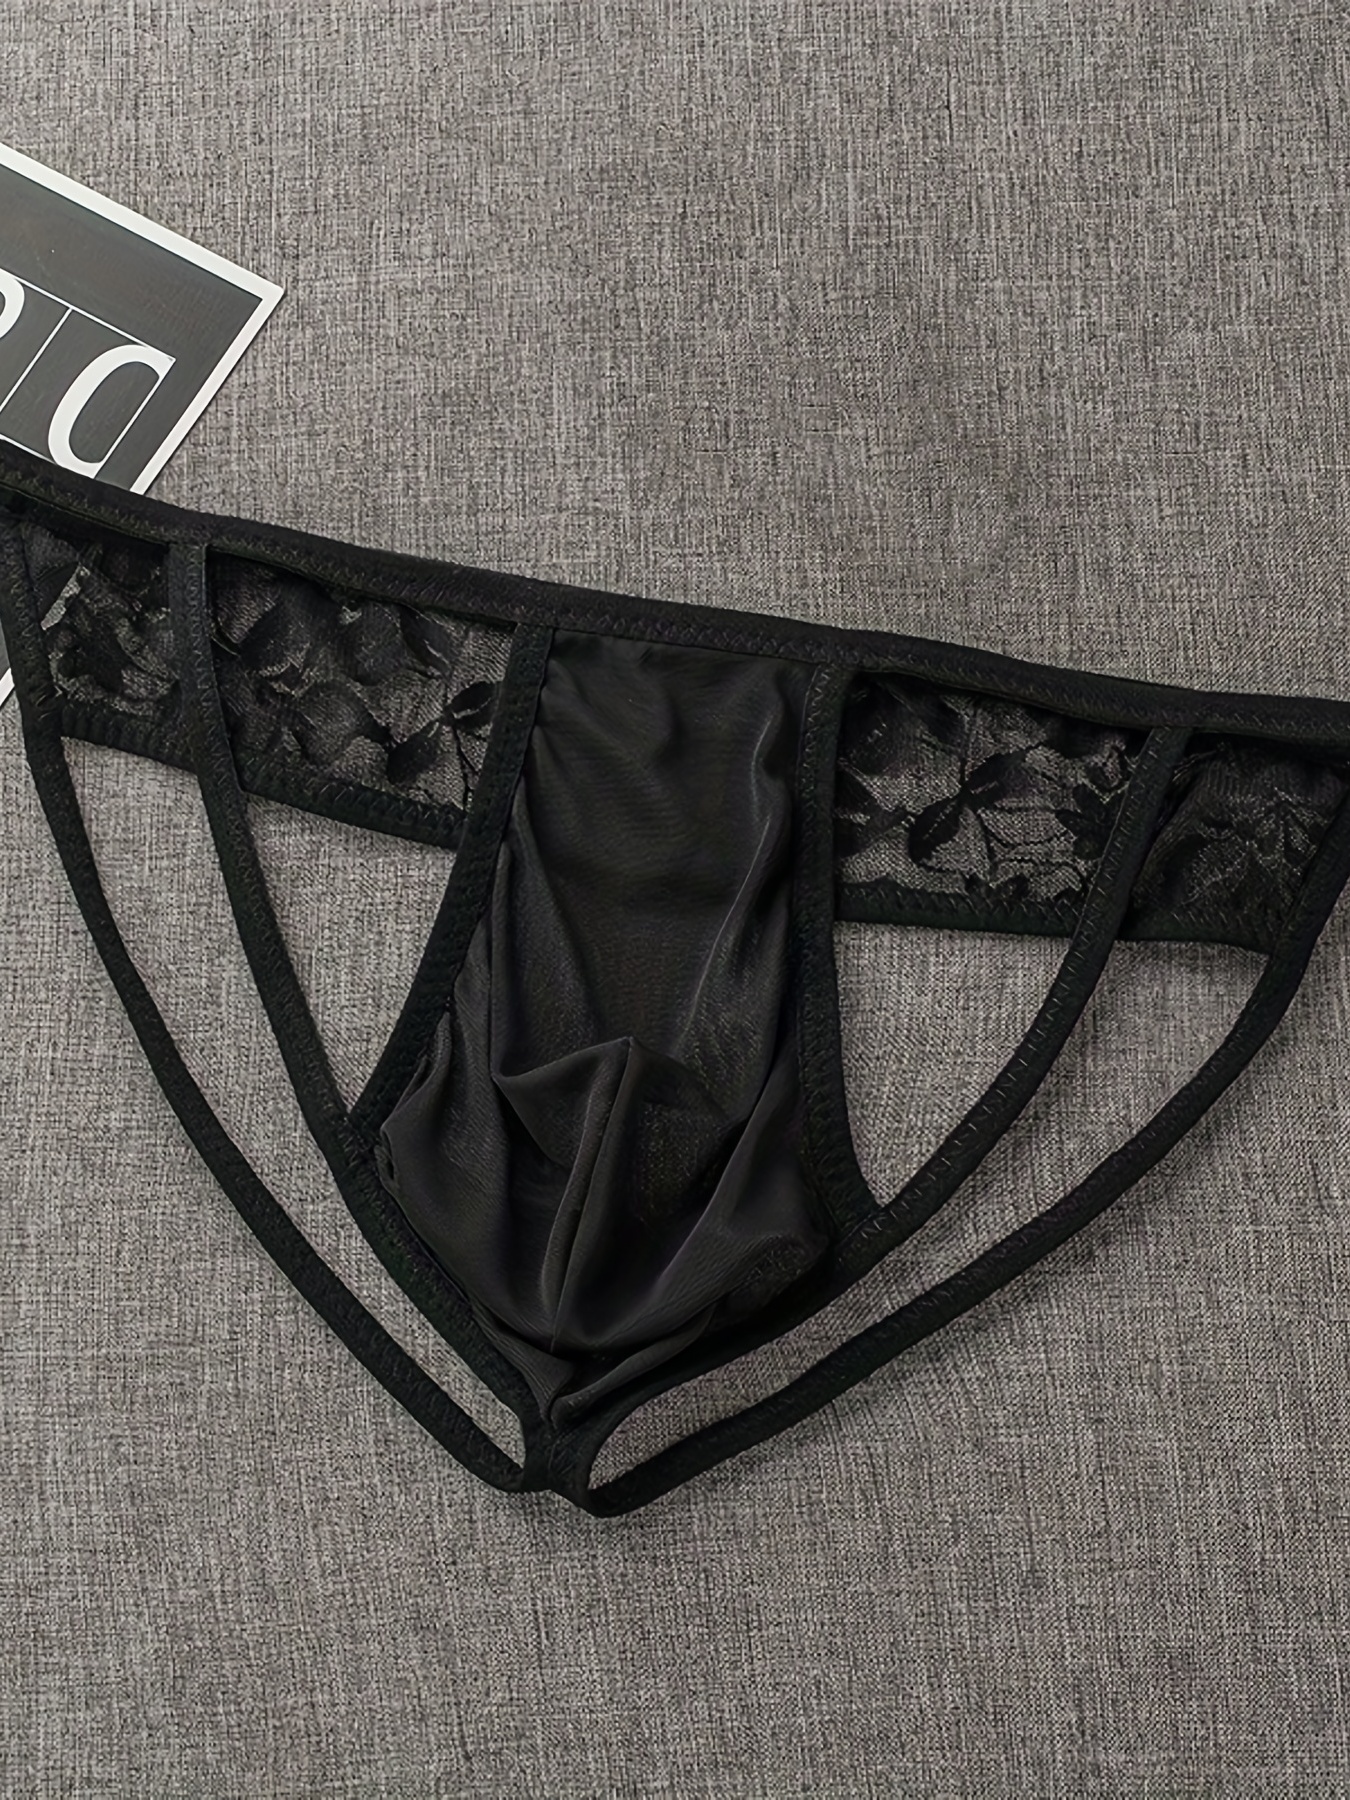 Black Sheer Thong for Men, Mesh Lace Panties for Men, Men's G